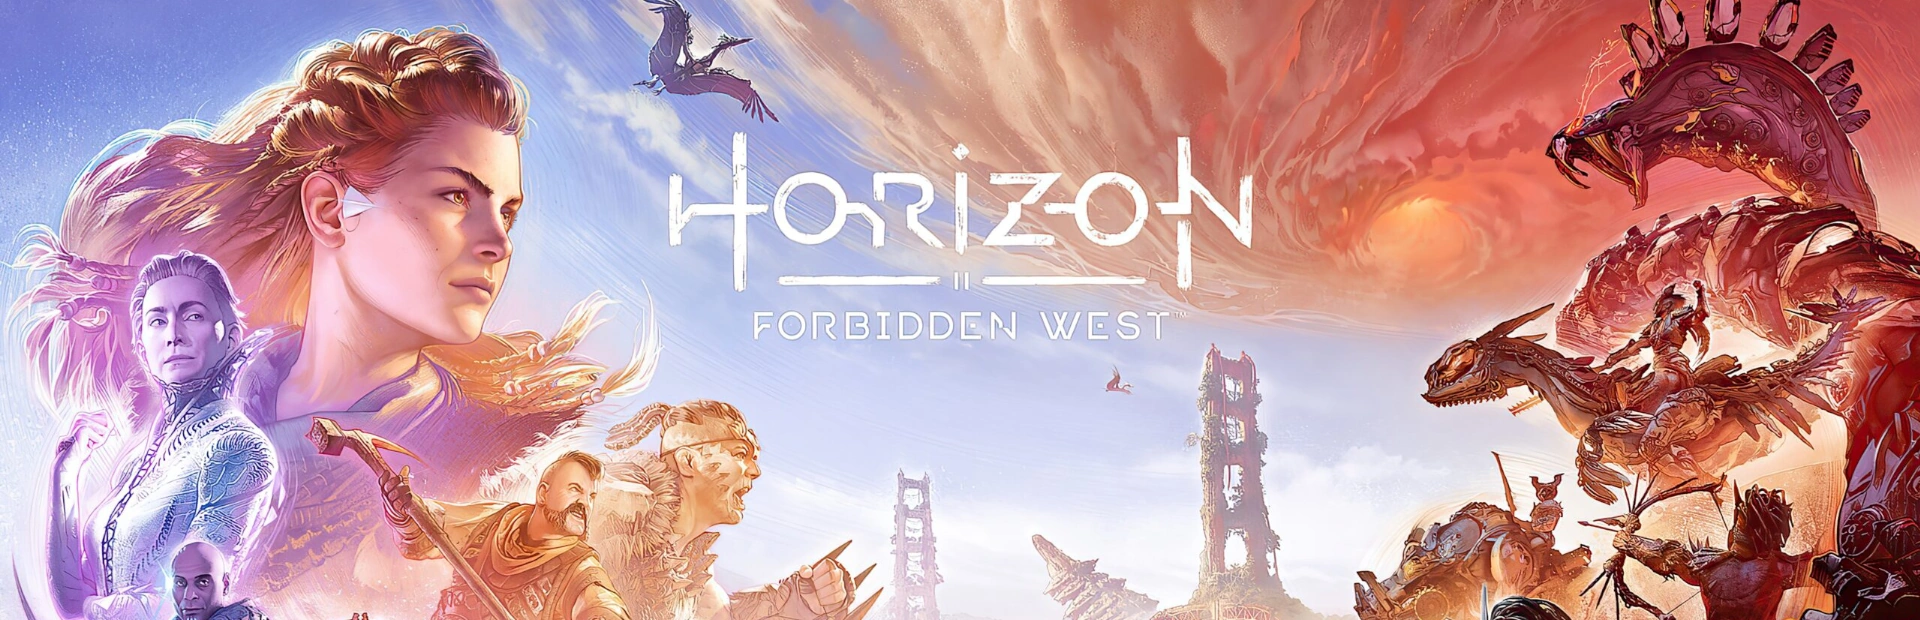 دانلود بازی Horizon Forbidden West برای کامپیوتر | گیمباتو